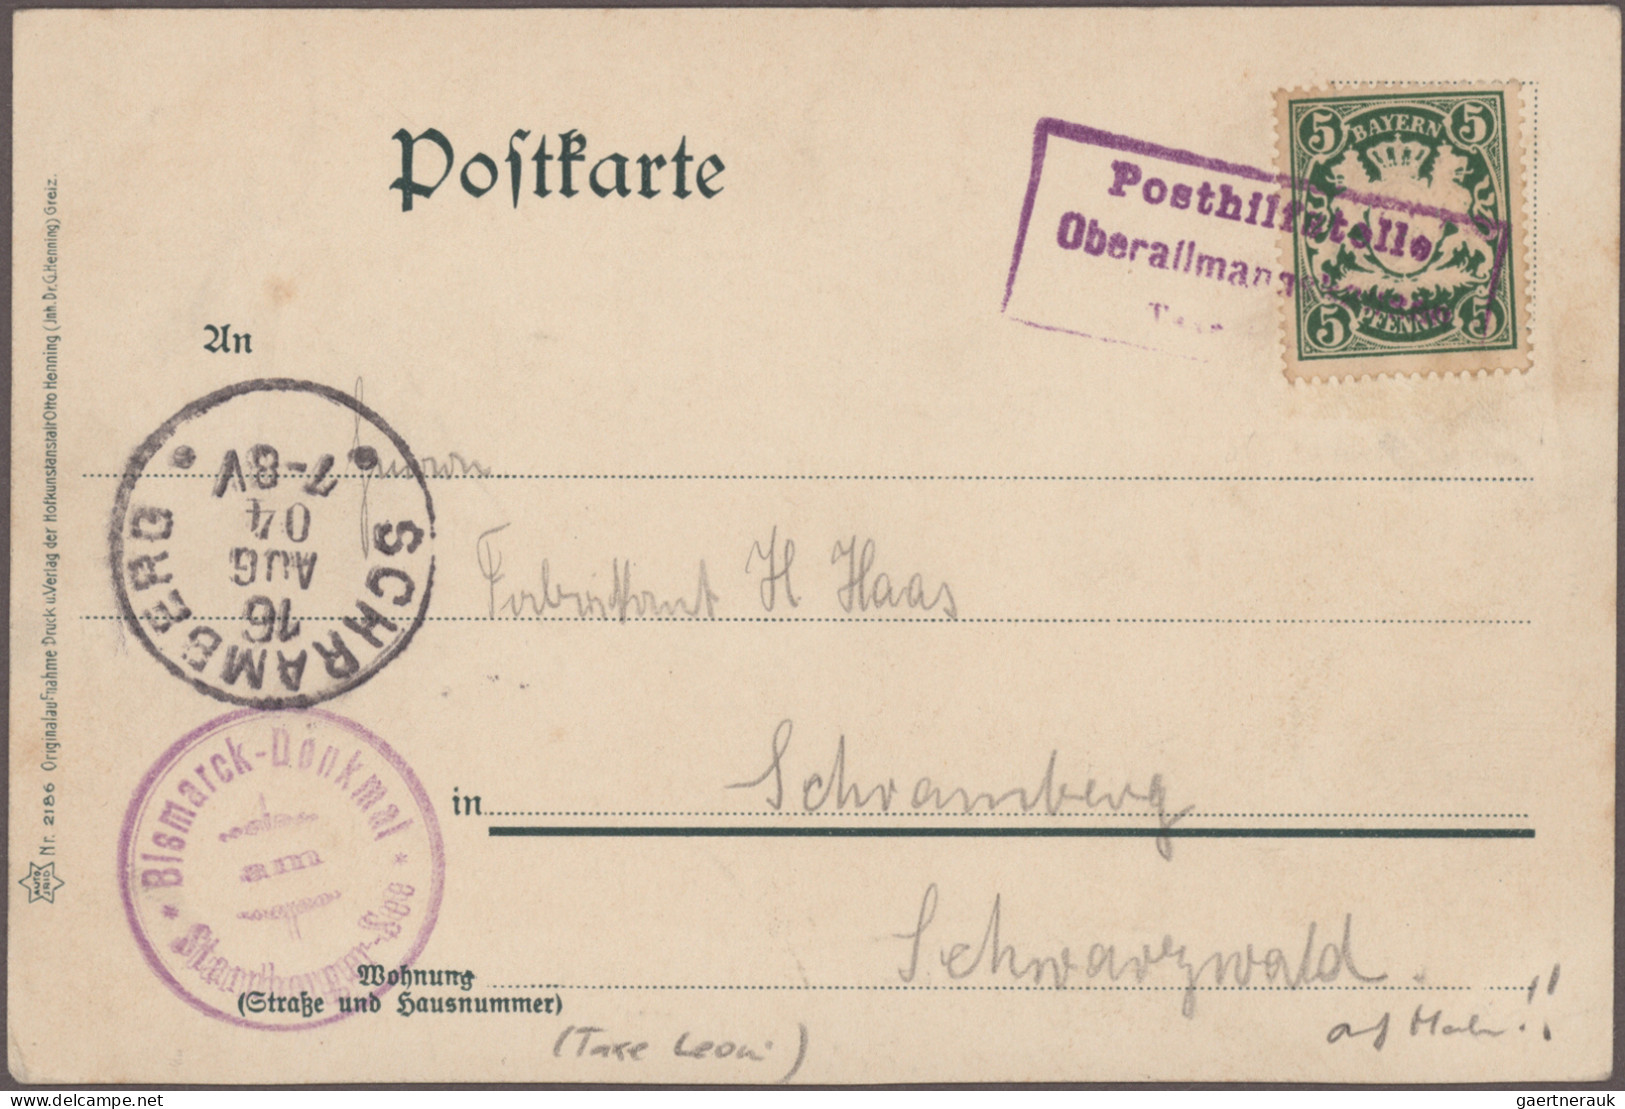 Bayern - Marken und Briefe: 1840/1919 (ca.), Sammlung von ca. 105 Briefen und Ka